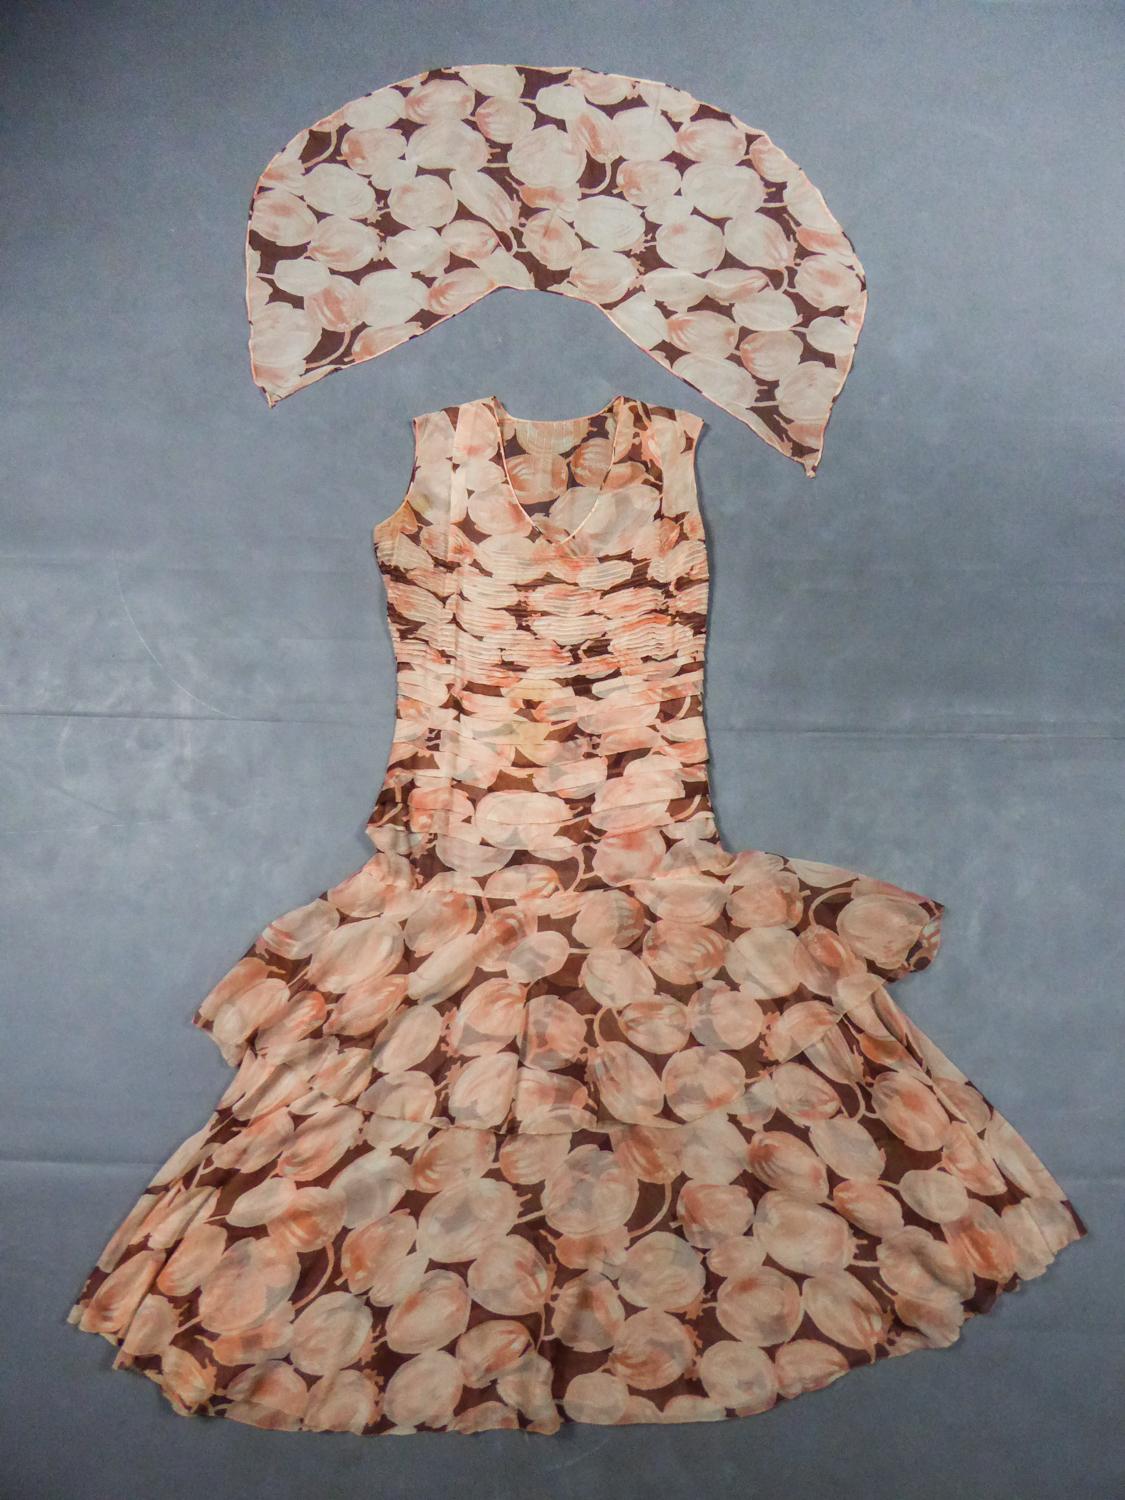 Um 1930/1940
Frankreich

Anonymer Haute Couture-Schal und Kleid aus Seidenkrepp, bedruckt mit Früchten in Rosa-, Orange- und Brauntönen, aus den Jahren 1930/1940. Röhrenförmiger, ärmelloser Schnitt, typisch für die 1930er Jahre, mit Schrägschnitt in